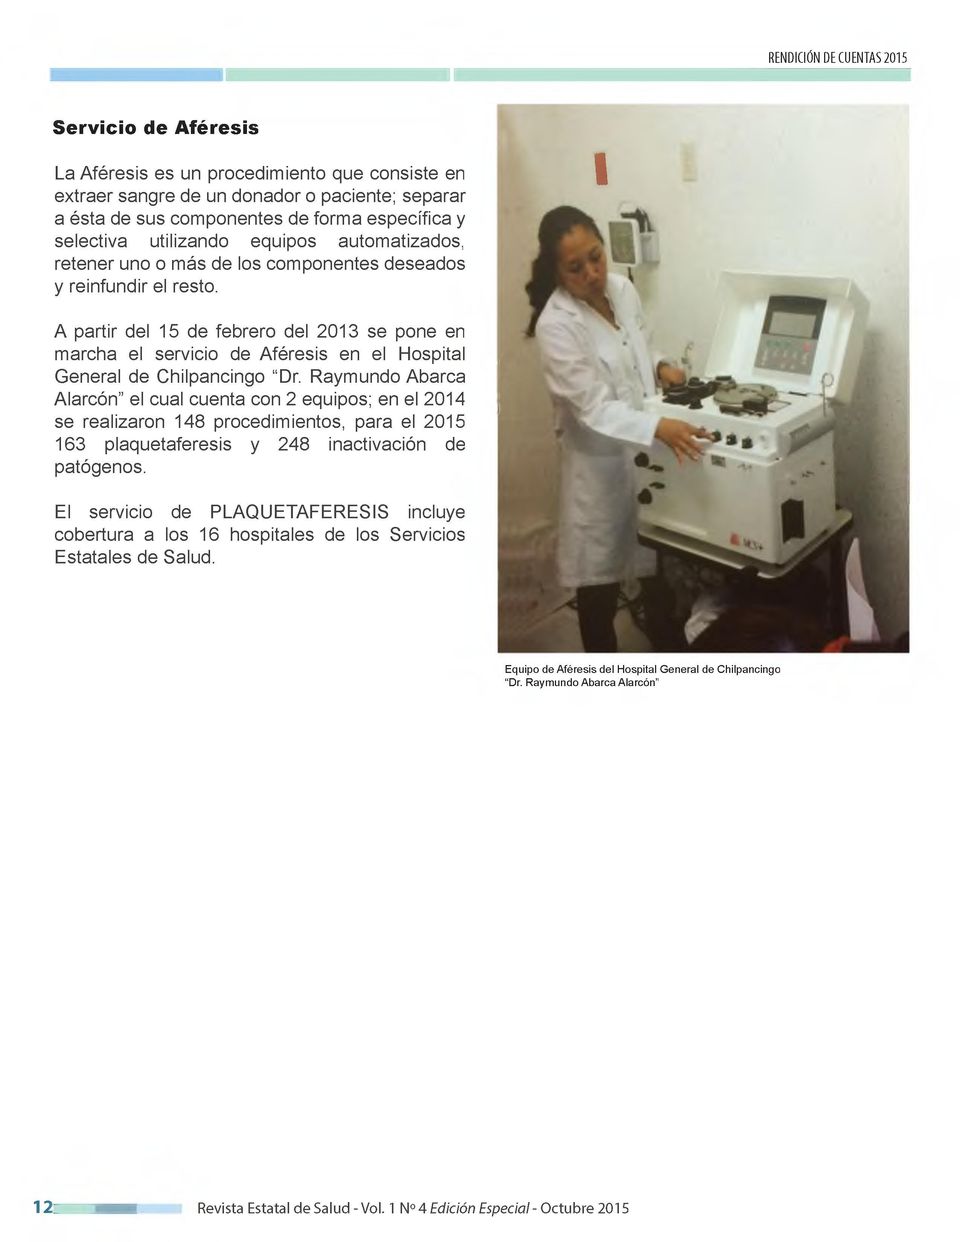 I A partir del 15 de febrero del 2013 se pone en marcha el servicio de Aféresis en el Hospital General de Chilpancingo "Dr.